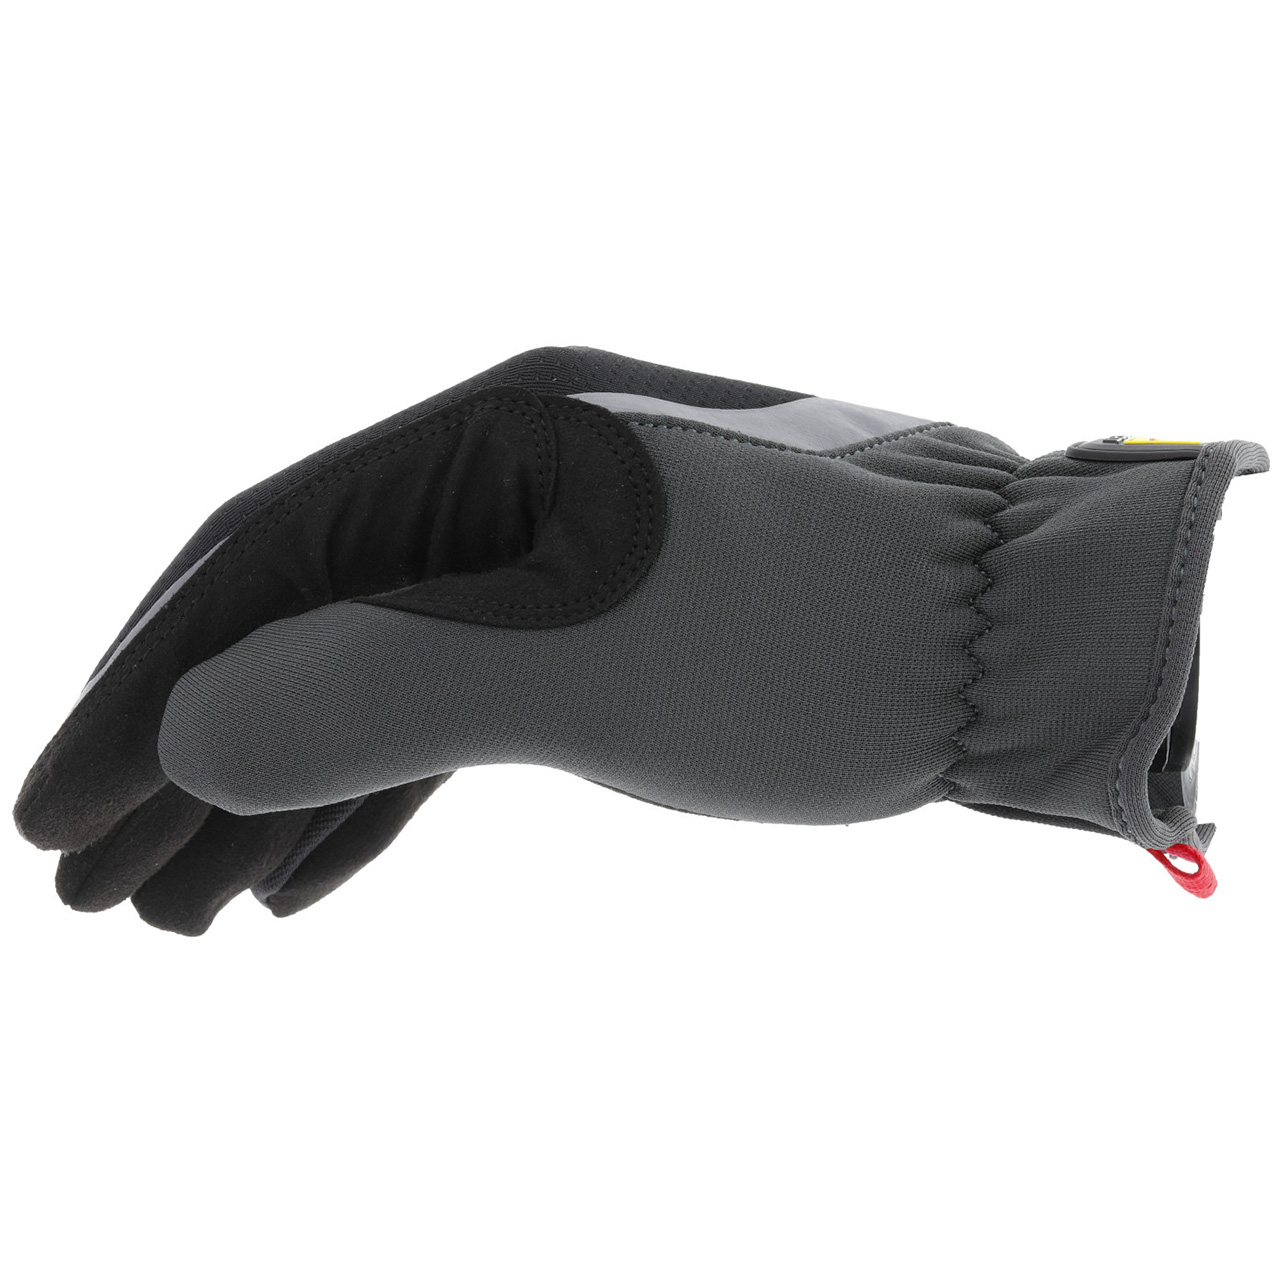 Mechanix Wear FastFit® Work Gloves, Blue, XX-Large - MFF-03-012 - Penn Tool  Co., Inc